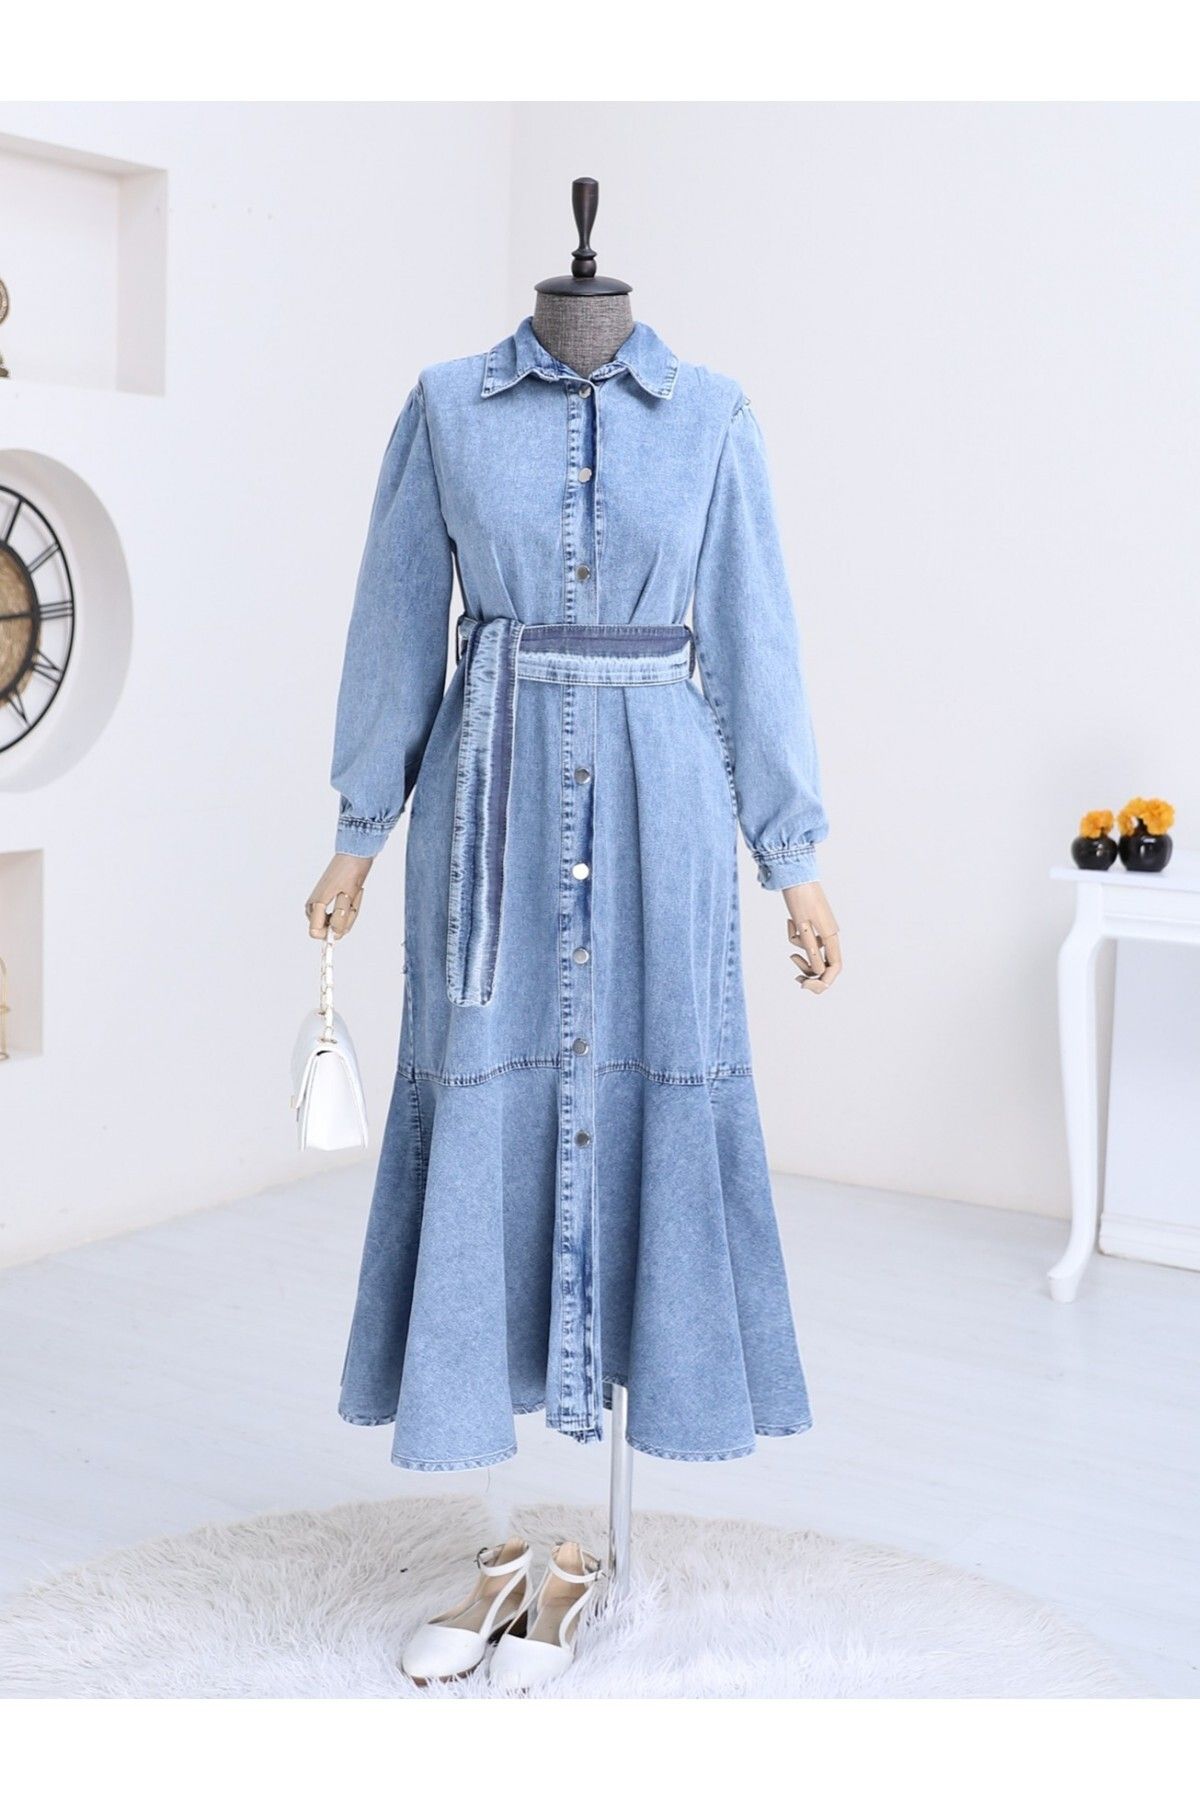 Modamorfo Boydan Düğmeli Eteği Fırfırlı Kot Elbise